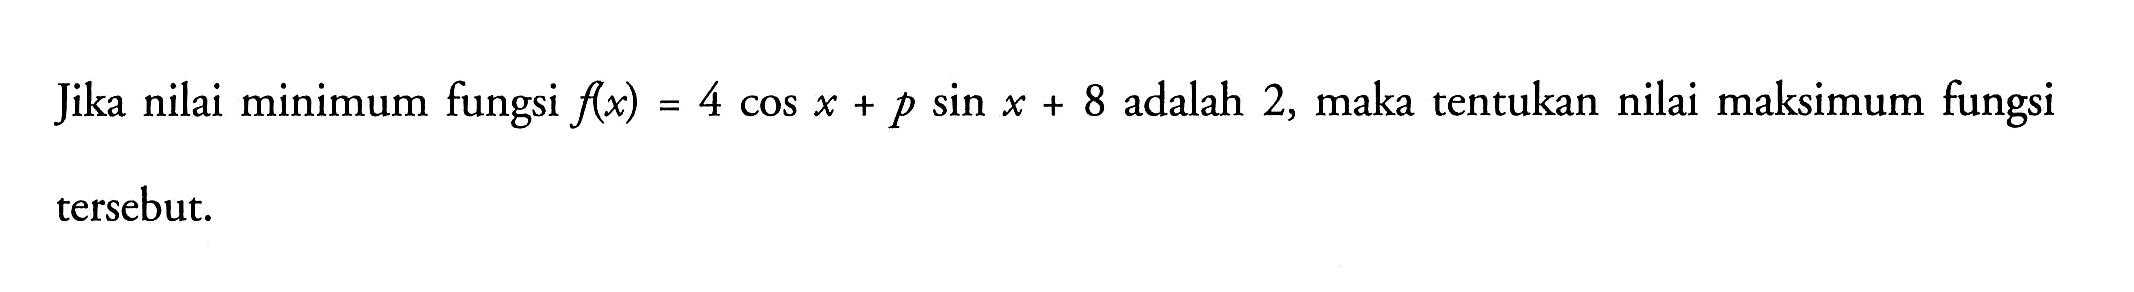 Jika nilai minimum fungsi f(x) = 4 cos x + p sin x + 8 adalah 2, maka tentukan nilai maksimum fungsi tersebut.